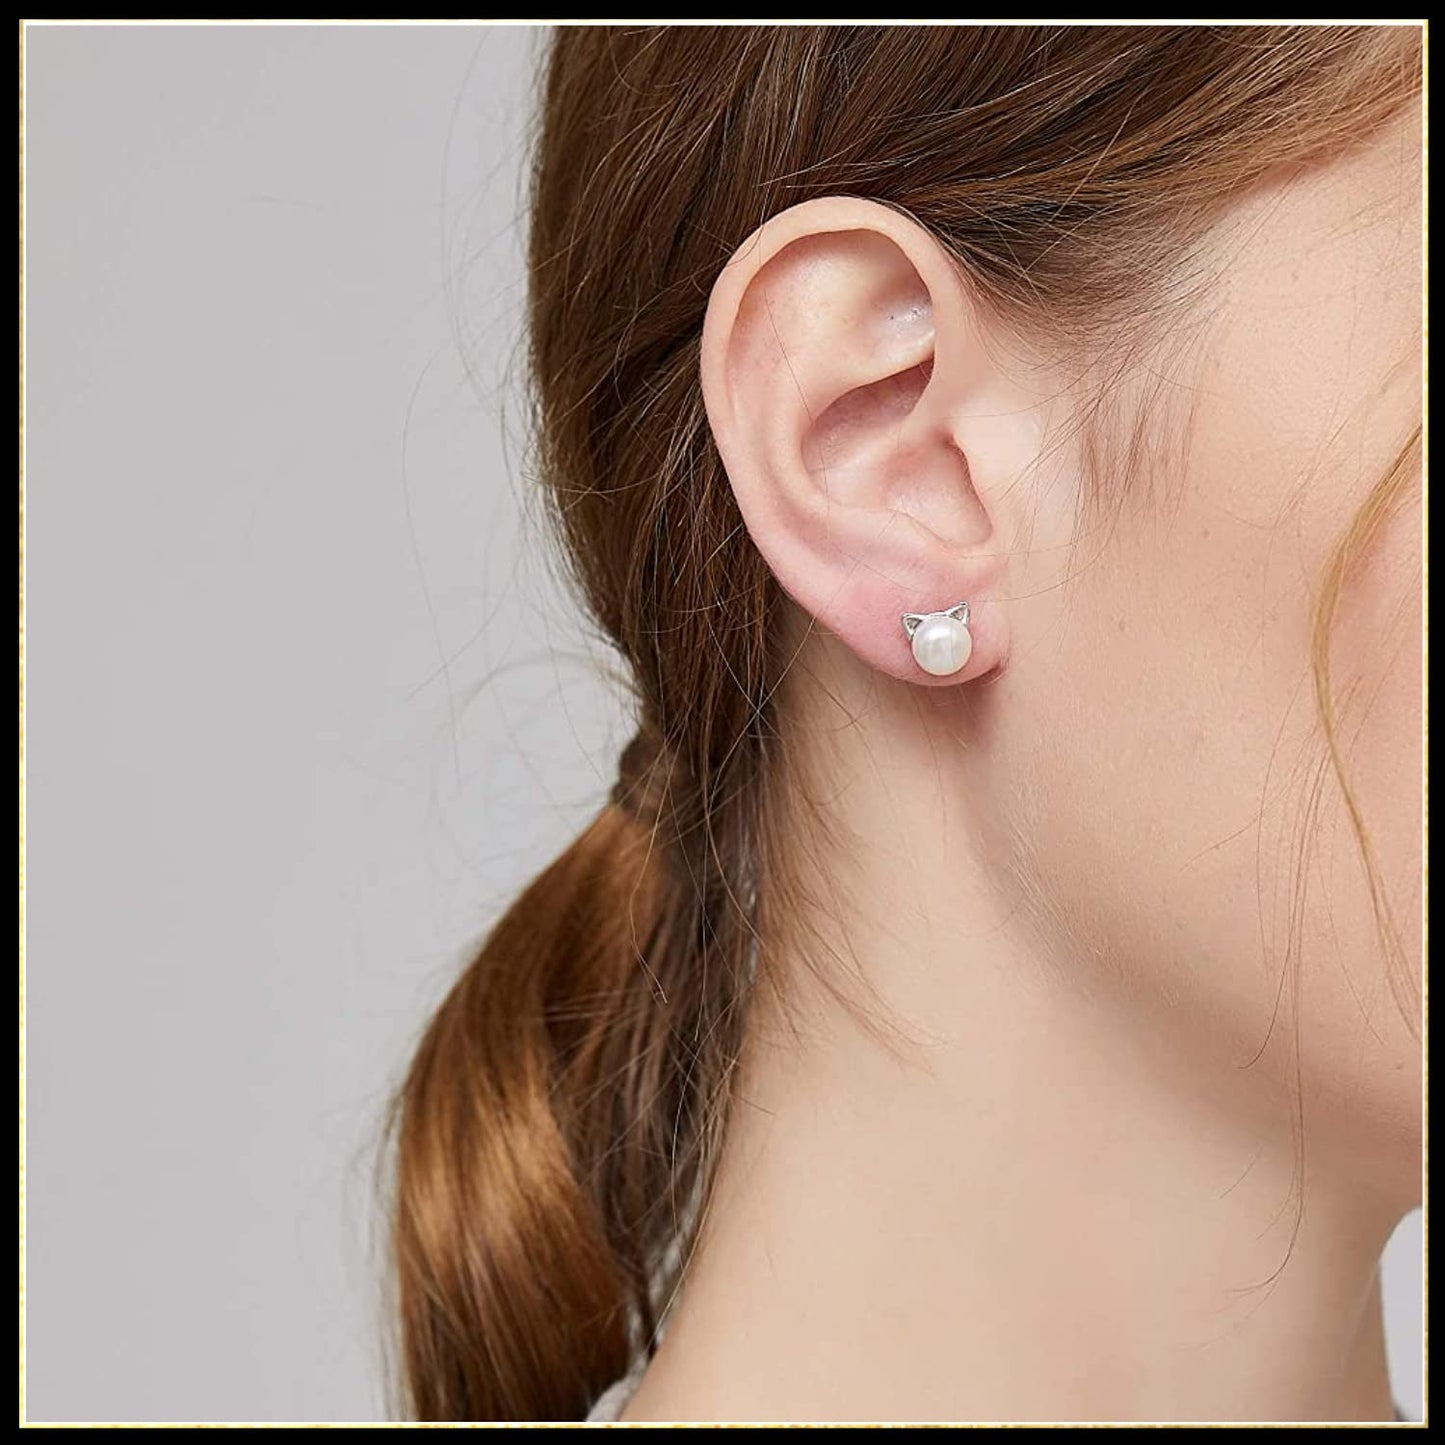 Pearl Cat Freshwater Earrings. Cute Kitten earrings